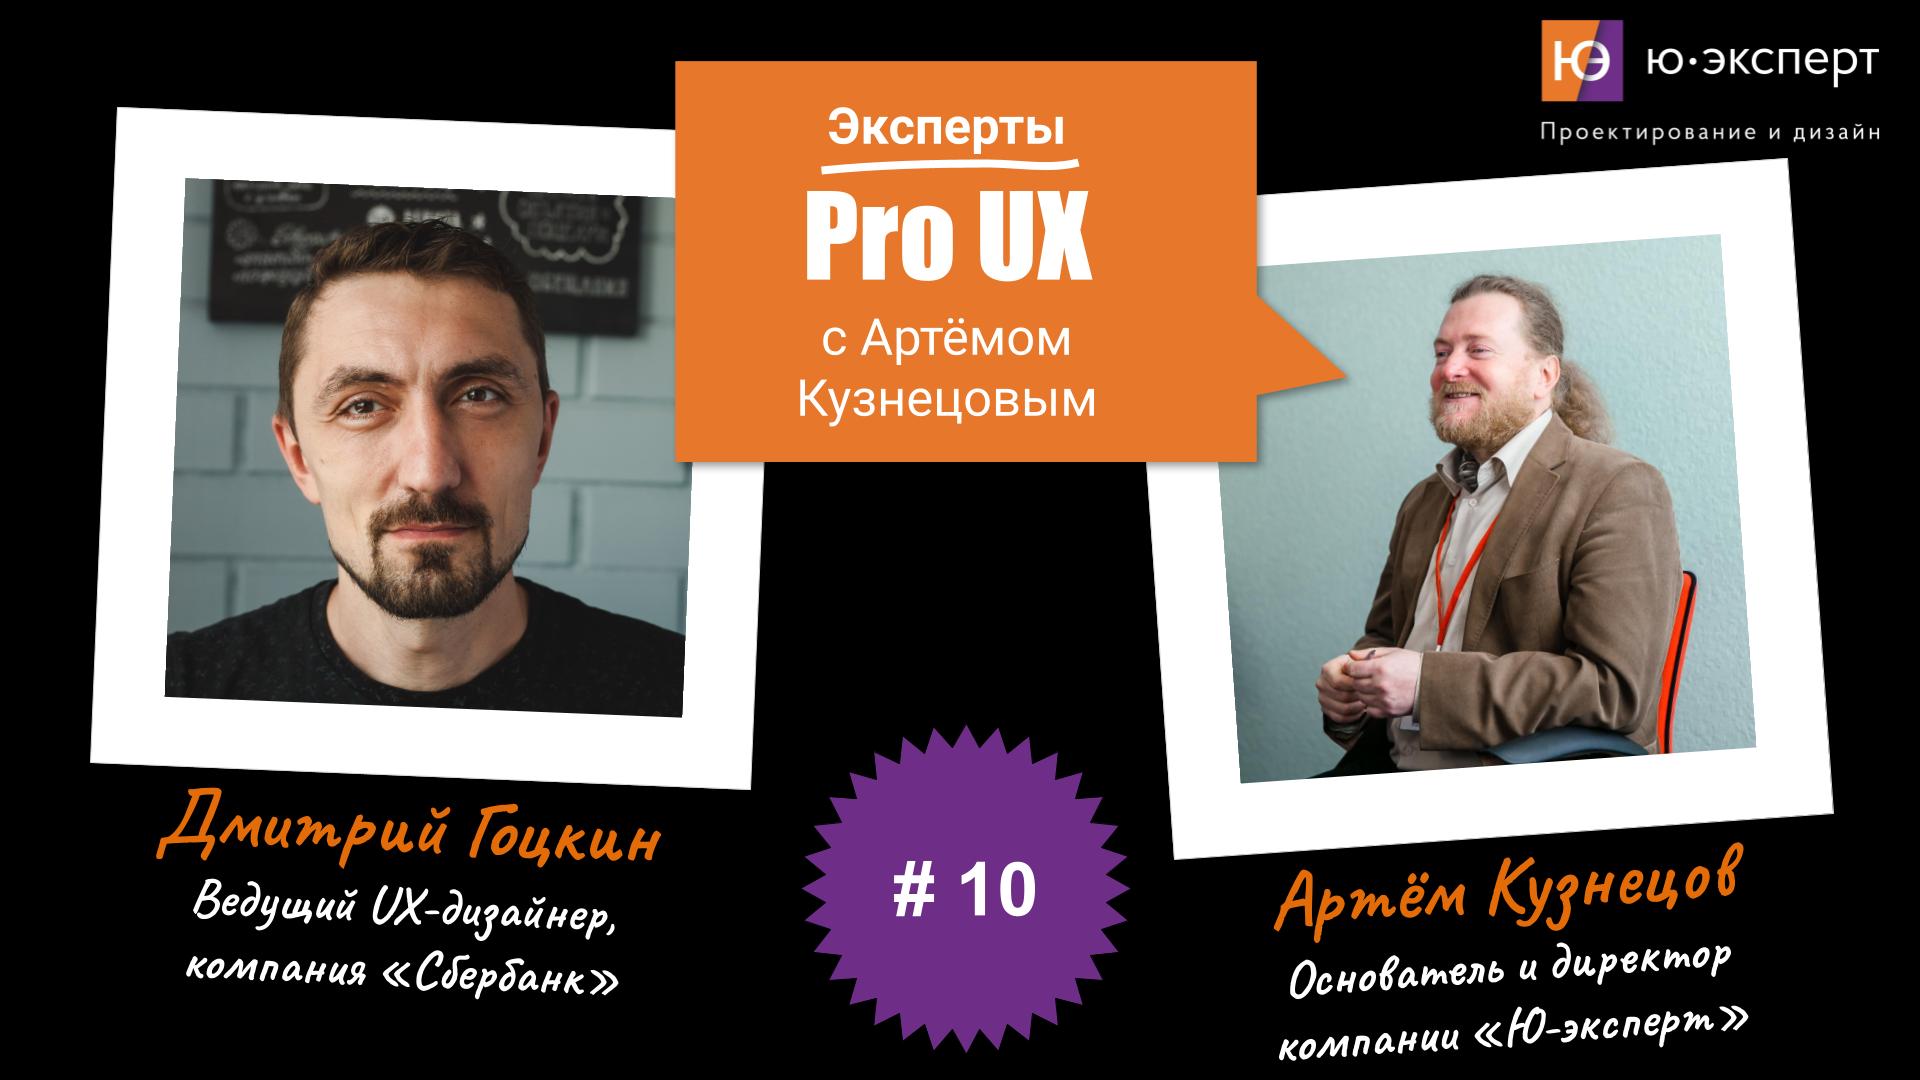 Артем Кузнецов Pro UX #10 с Дмитрием Гоцкиным. Часть 2.